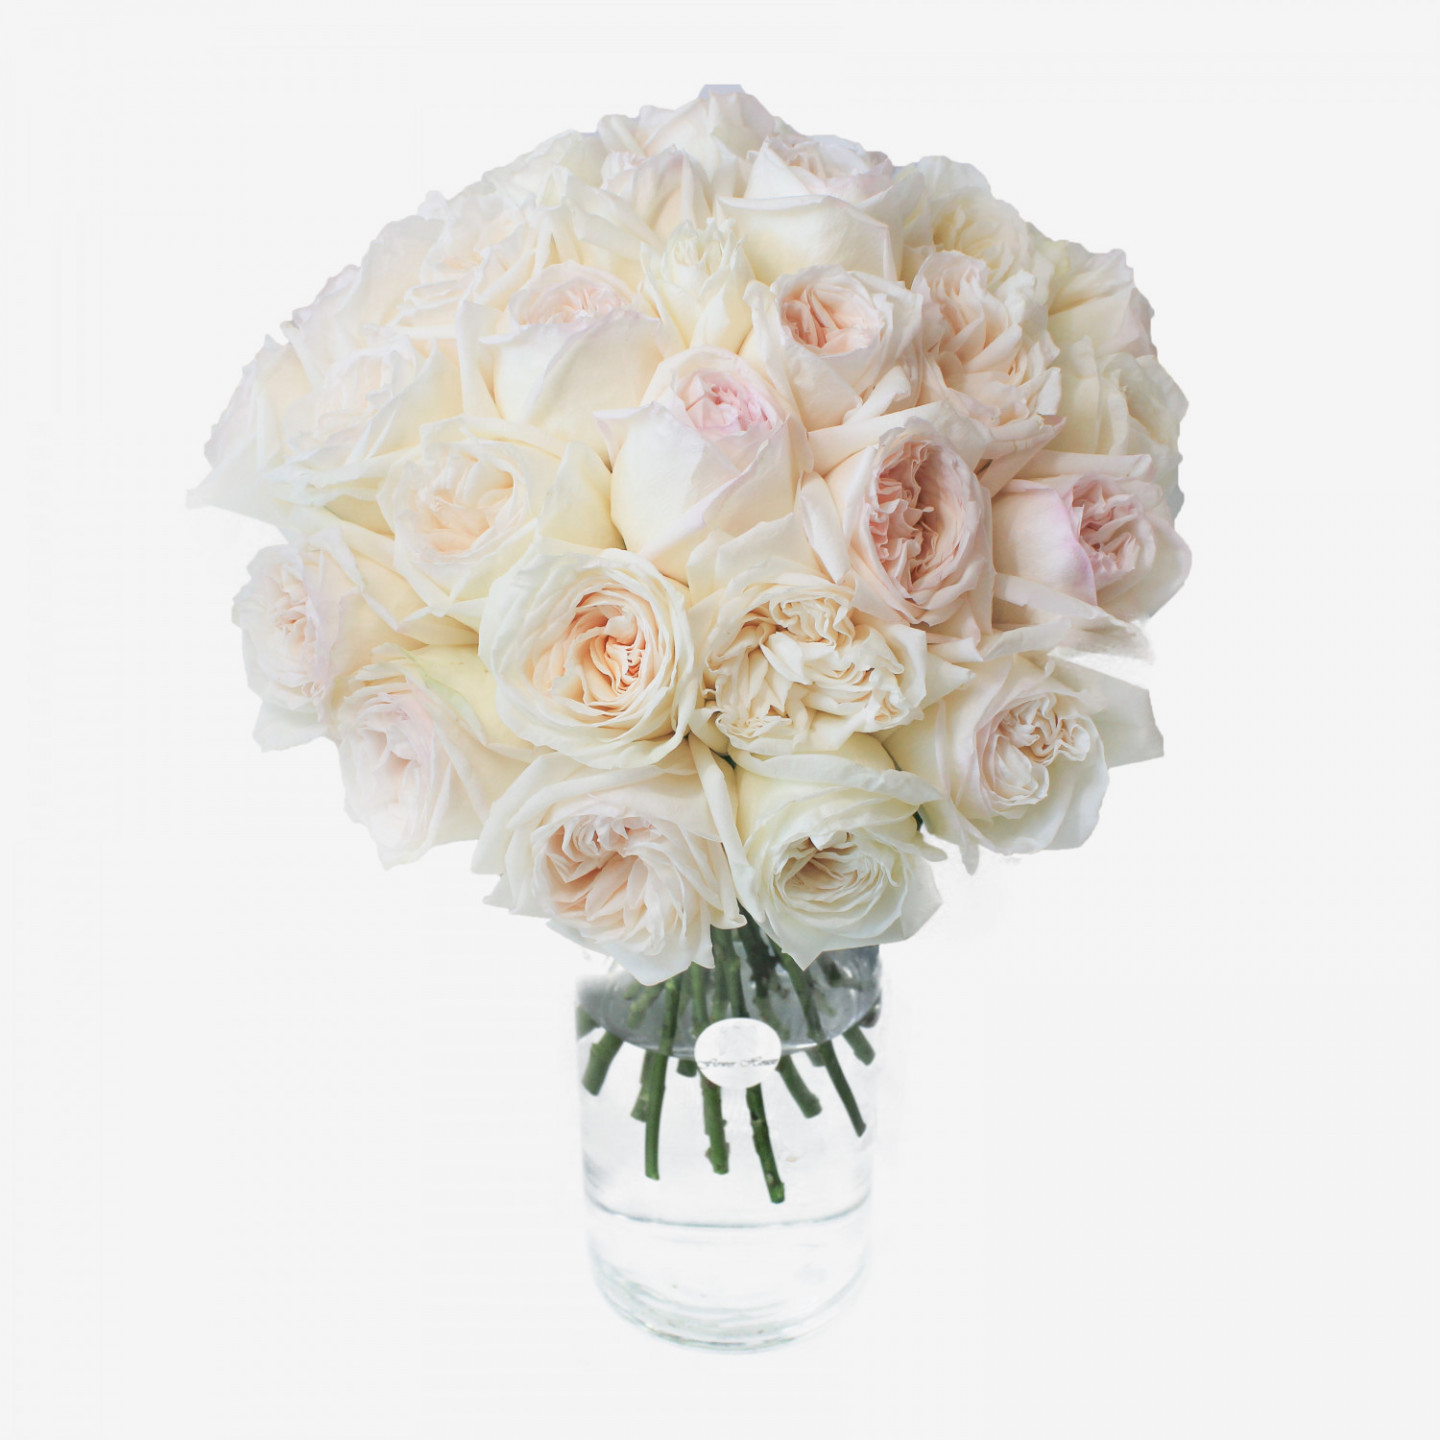 30 White O'hara Garden Roses Bouquet